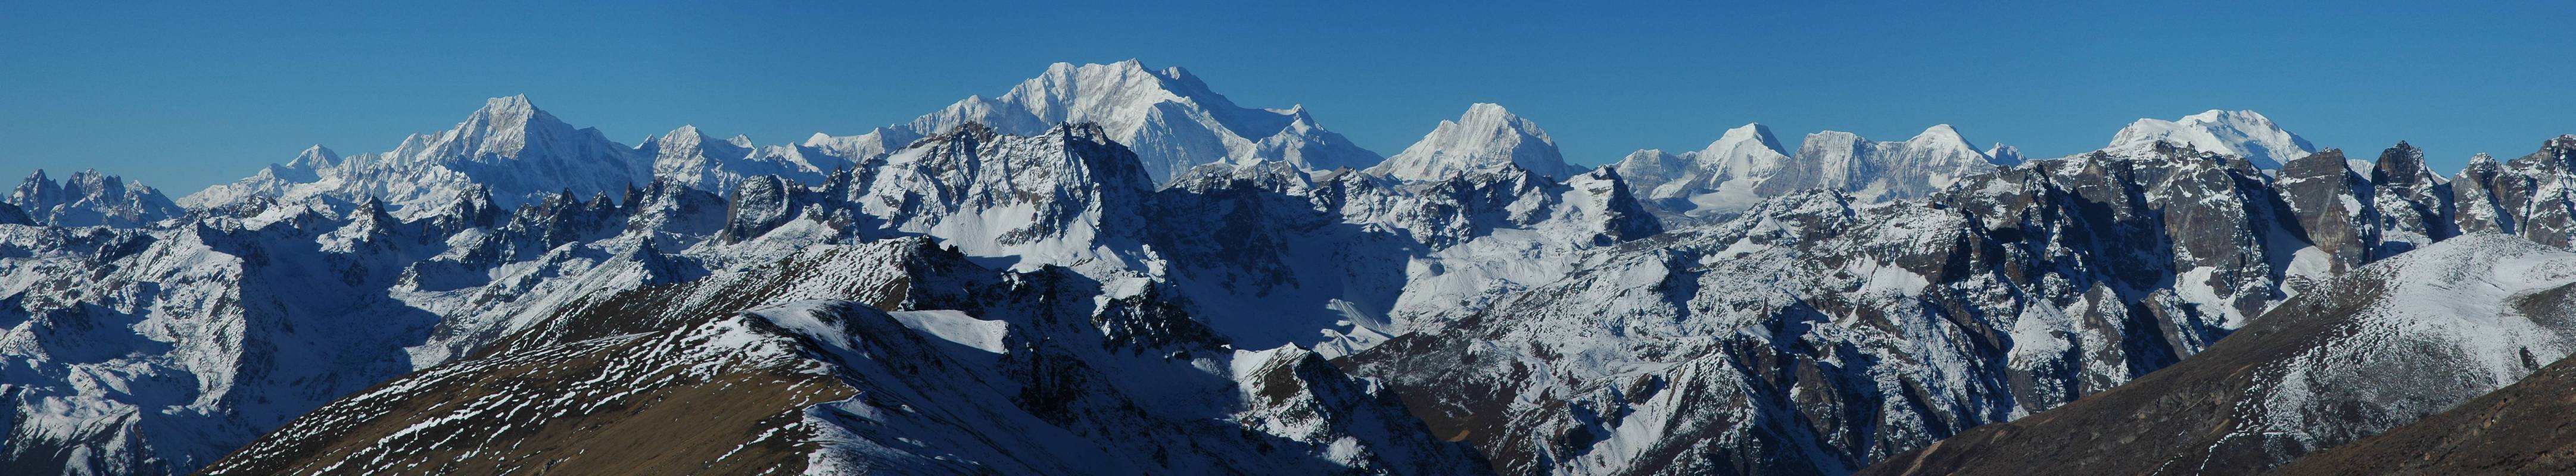 Panorama Kangchenjunga range from Sikkim